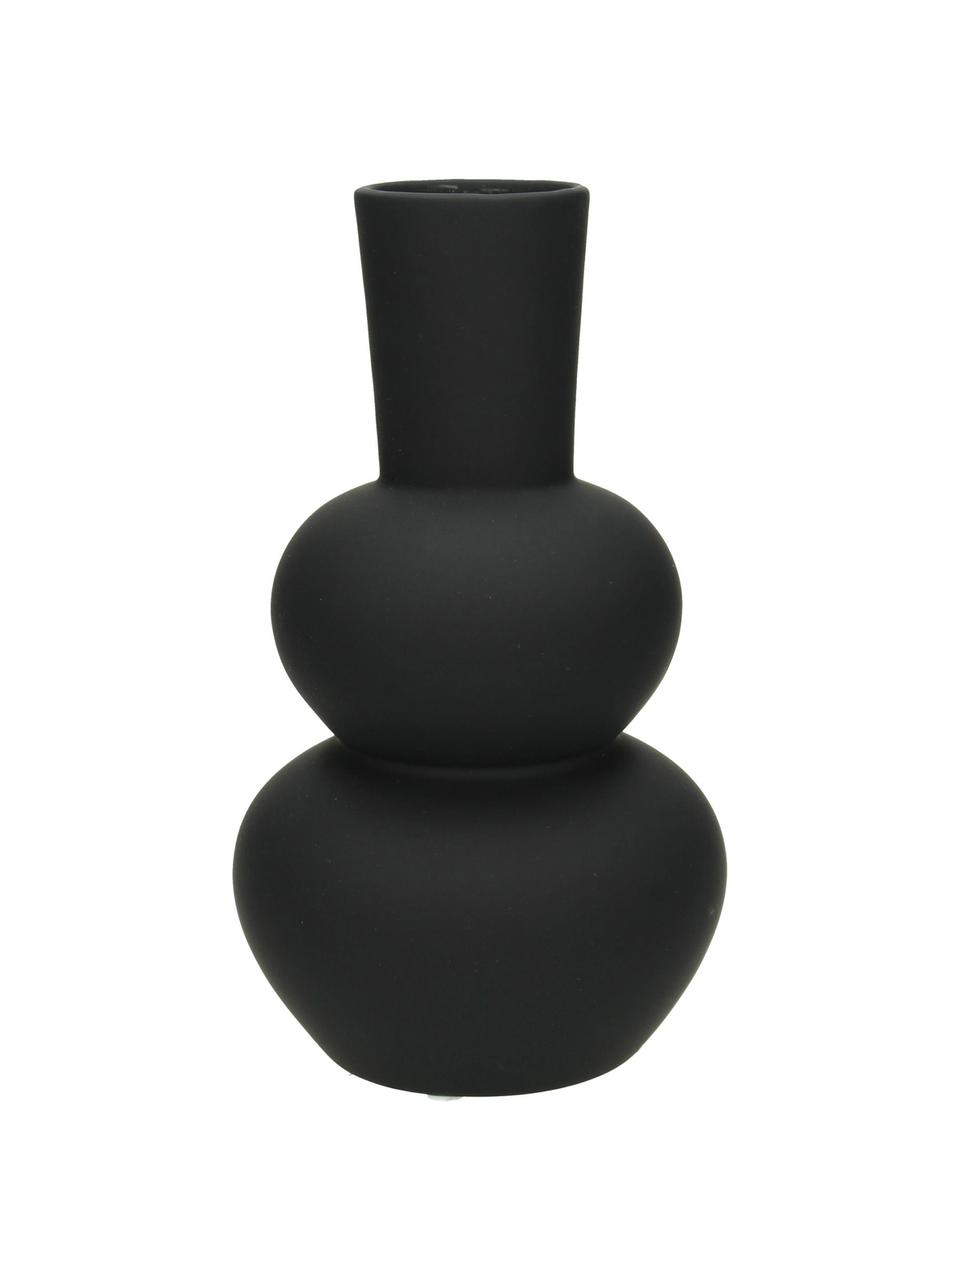 Design-Vase Eathan aus Steingut in Schwarz, Steingut, beschichtet, Schwarz, Ø 11 x H 20 cm